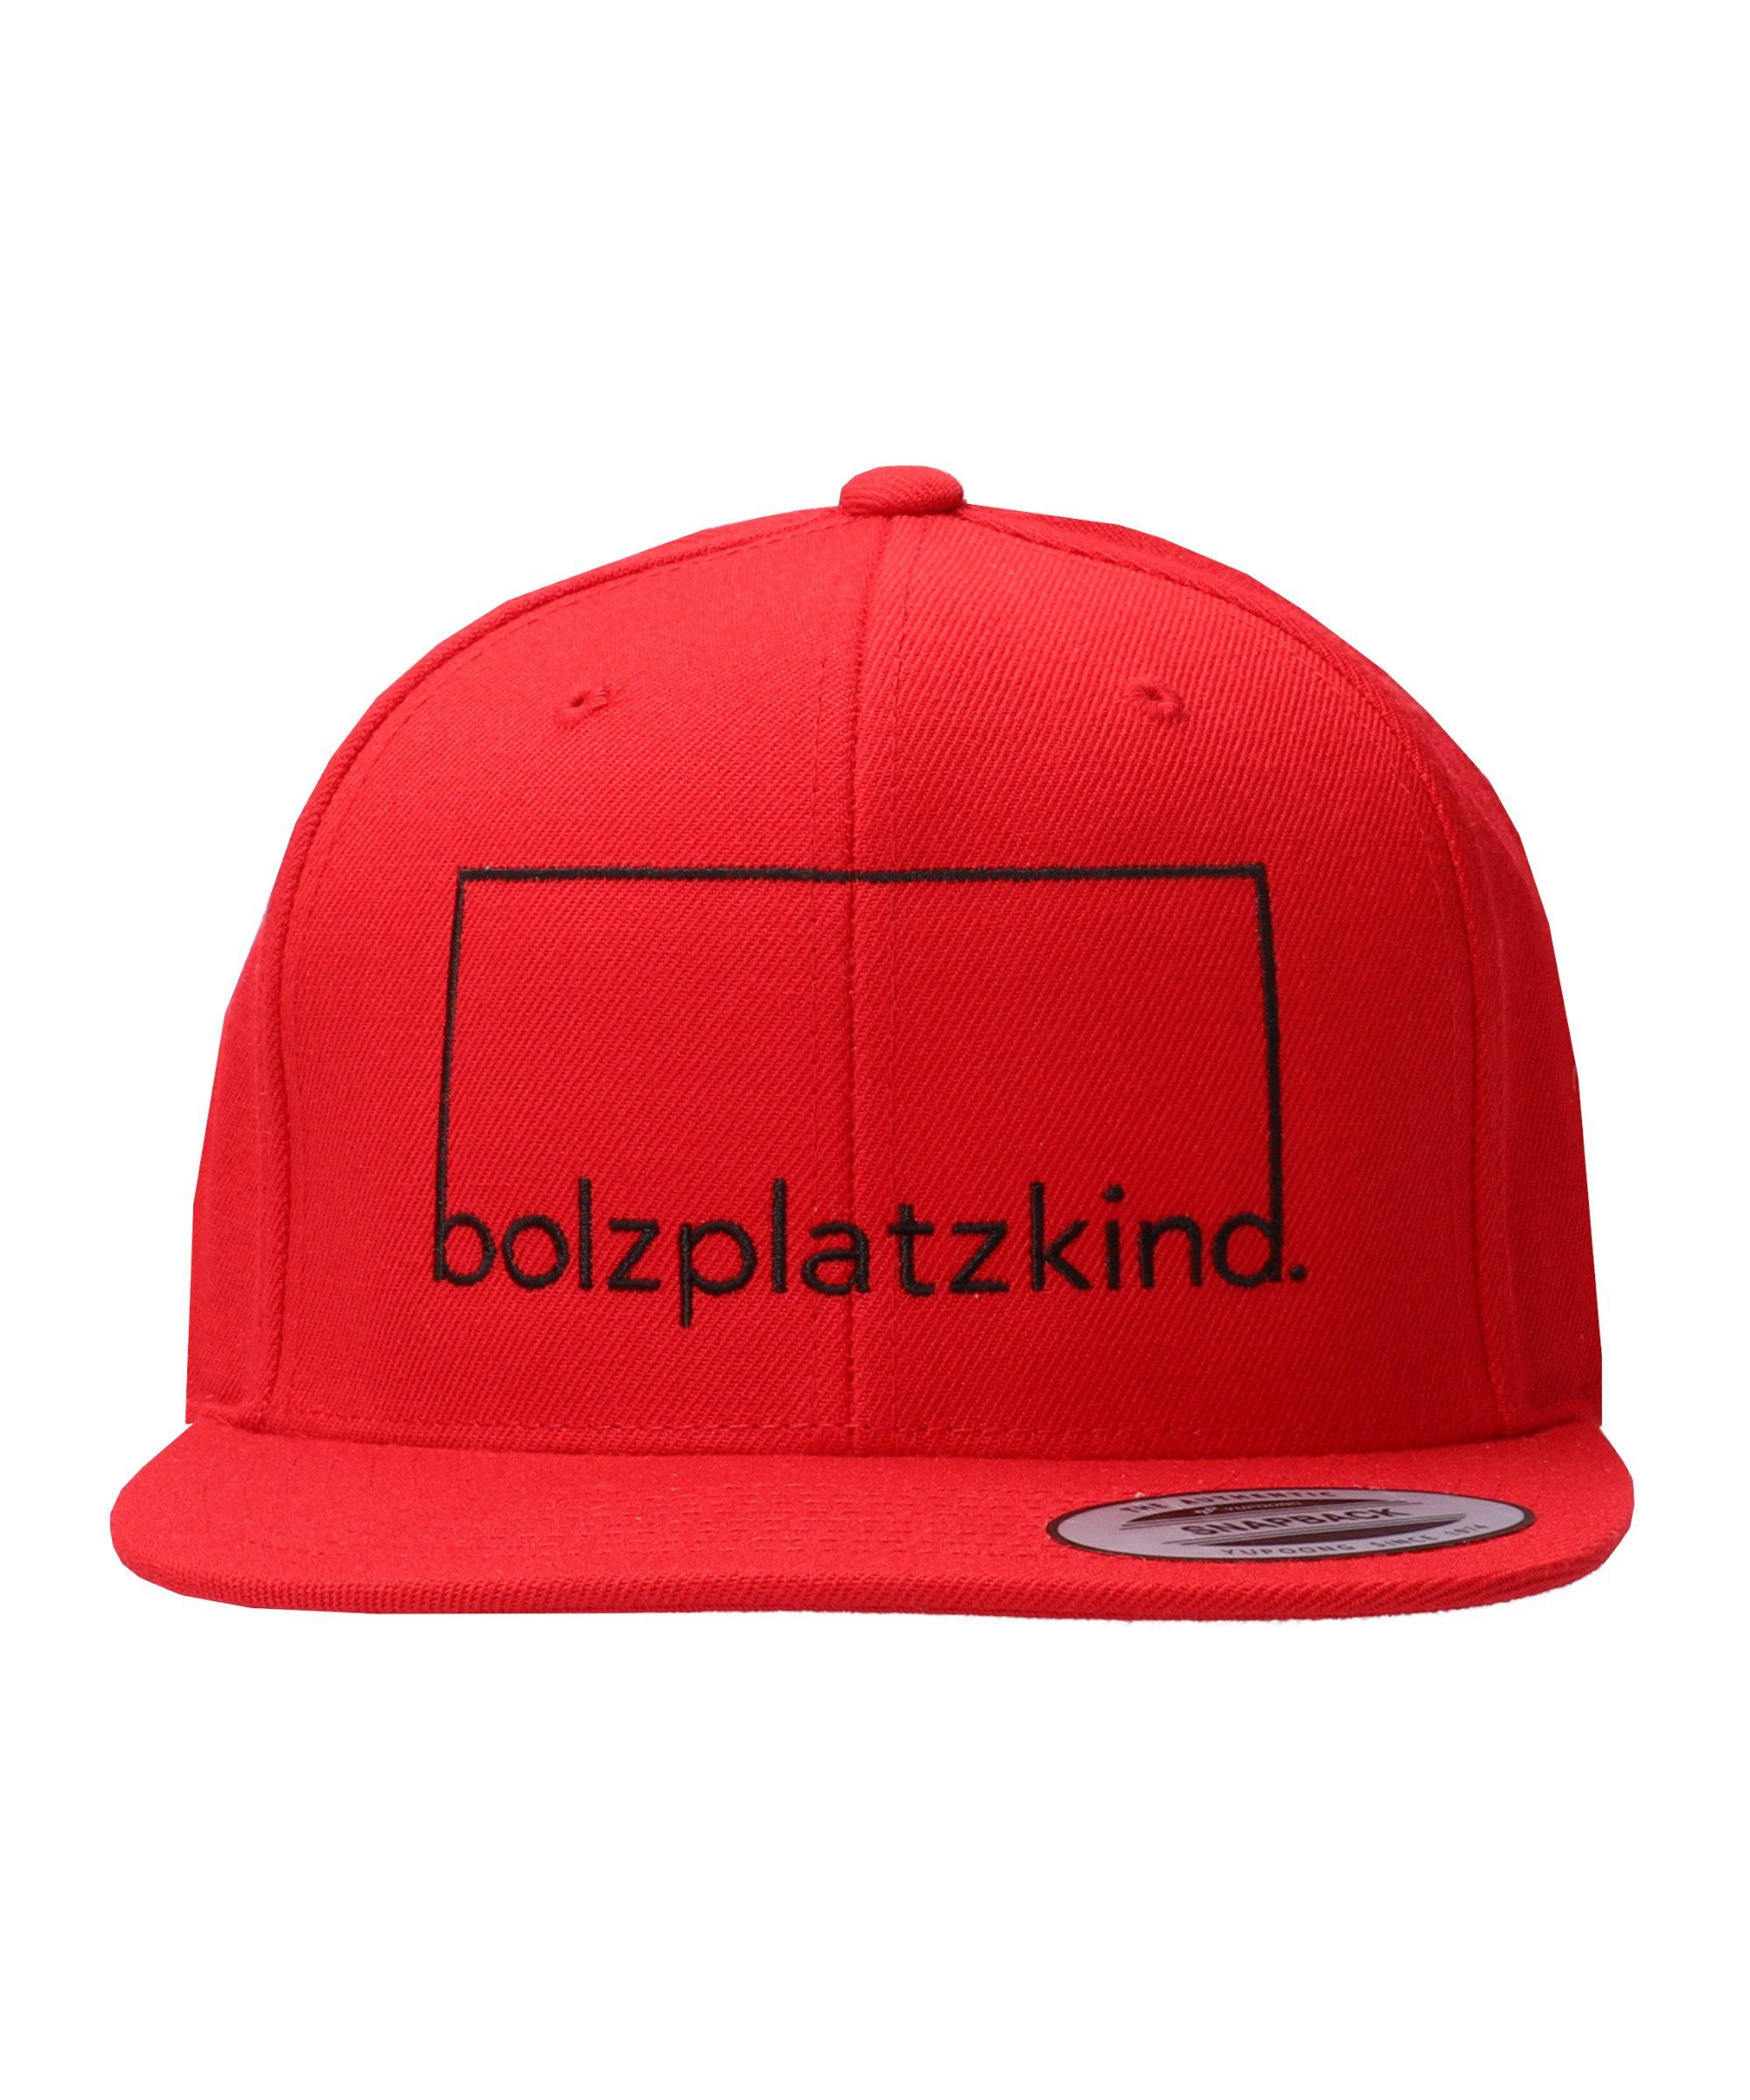 Bolzplatzkind Baseball Cap Classic Snapback Cap Hell rotschwarz